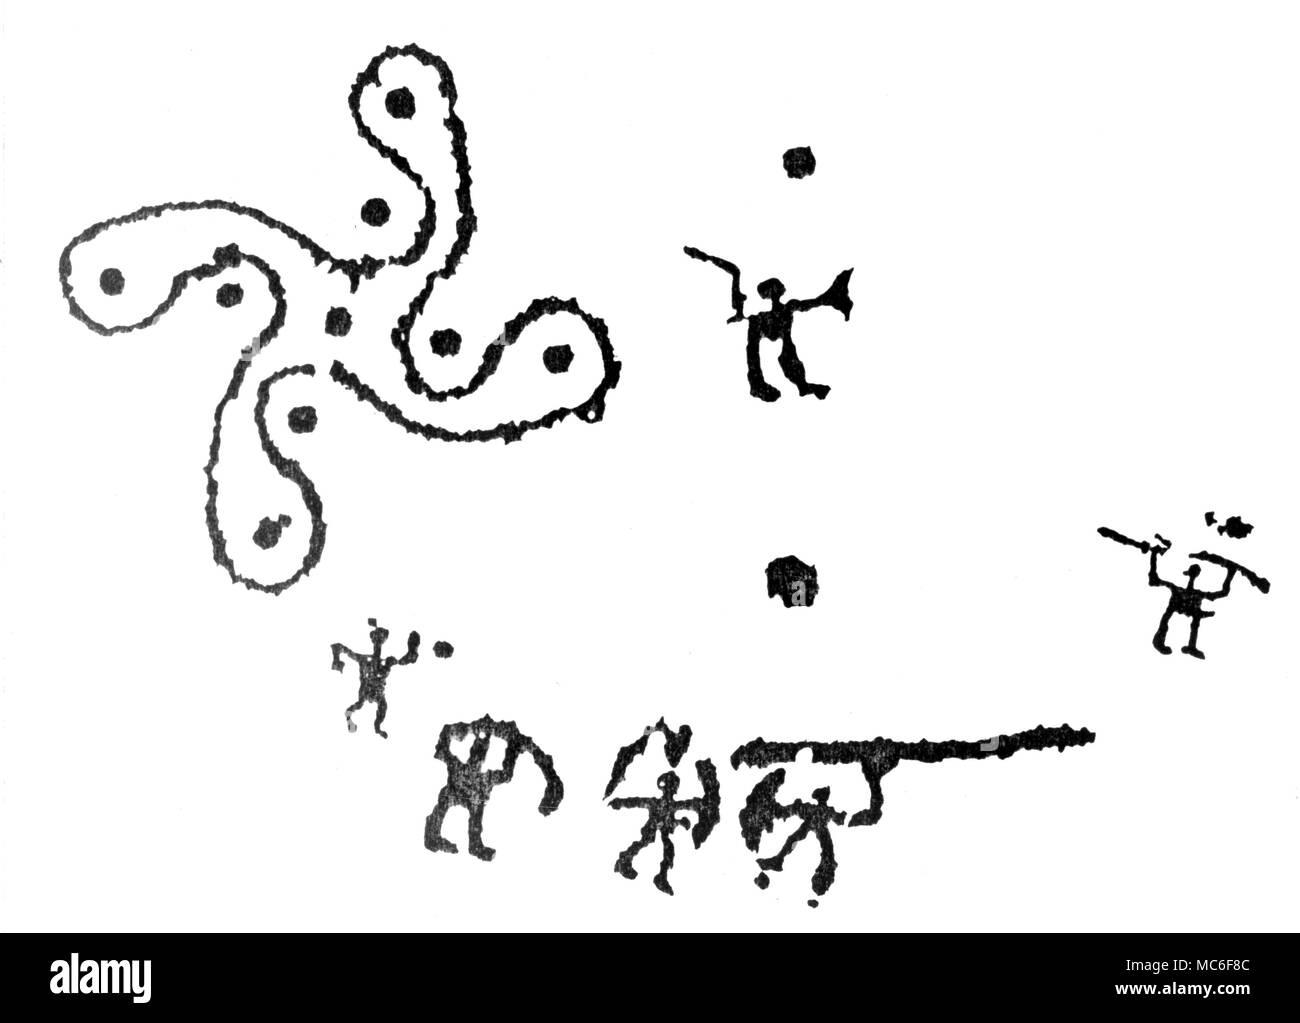 Eine prähistorische Version der Swastika (nur in drei Beispiele genannt), unter den Tausenden von petroglyphen von Capo da Ponte, Italien. Stockfoto